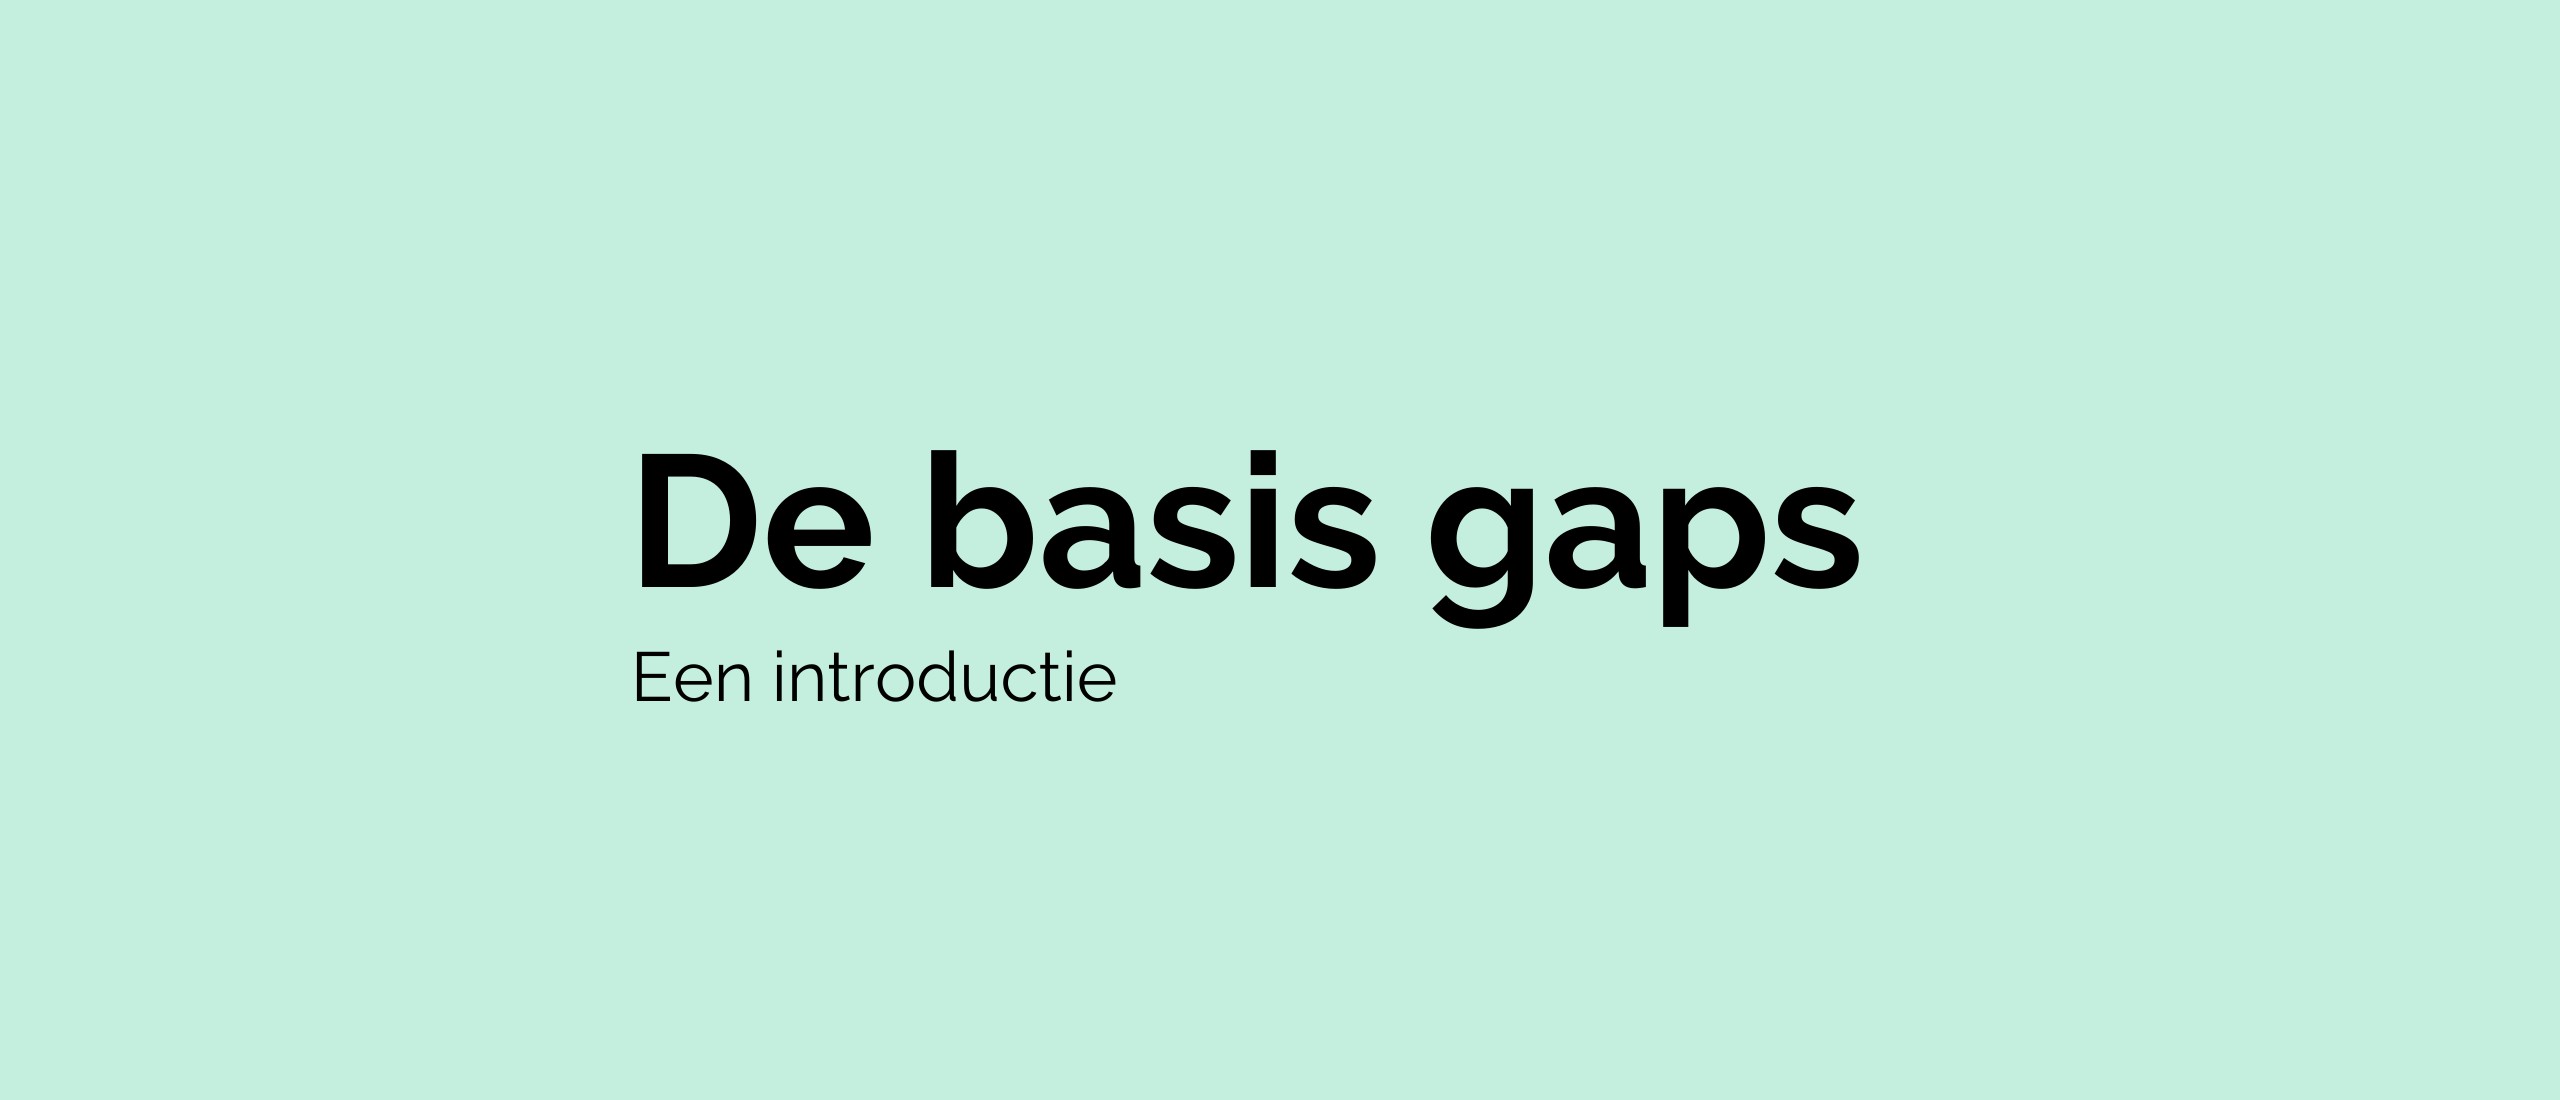 De basis gaps - Een introductie